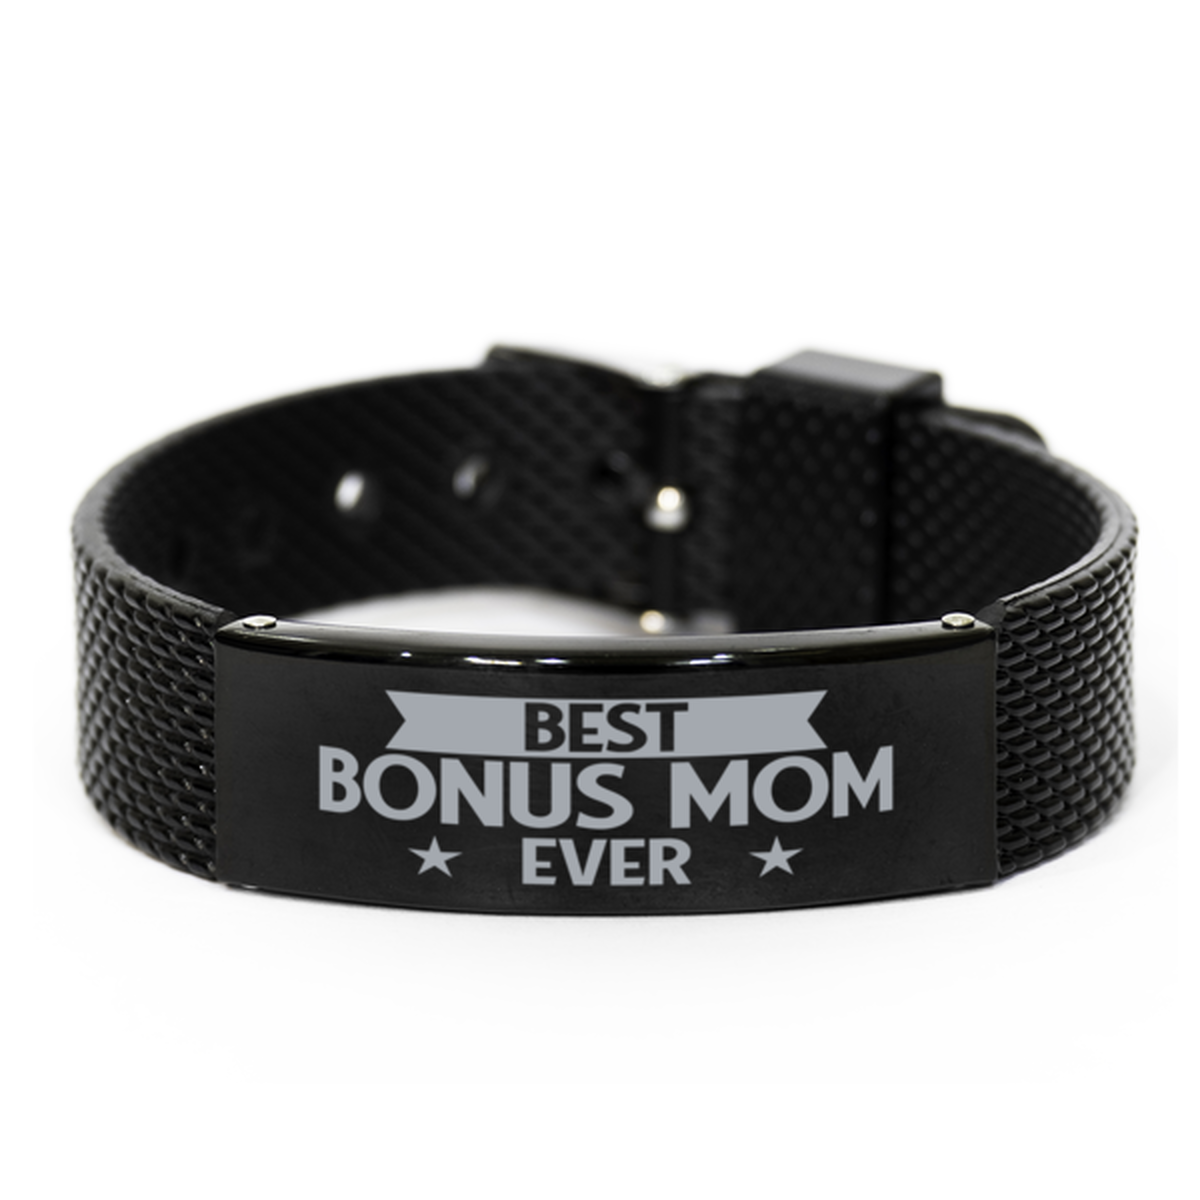 Best Bonus Mom Ever Bonus Mom Gifts, Gag Engraved Bracelet For Bonus Mom, Best Family Gifts For Women